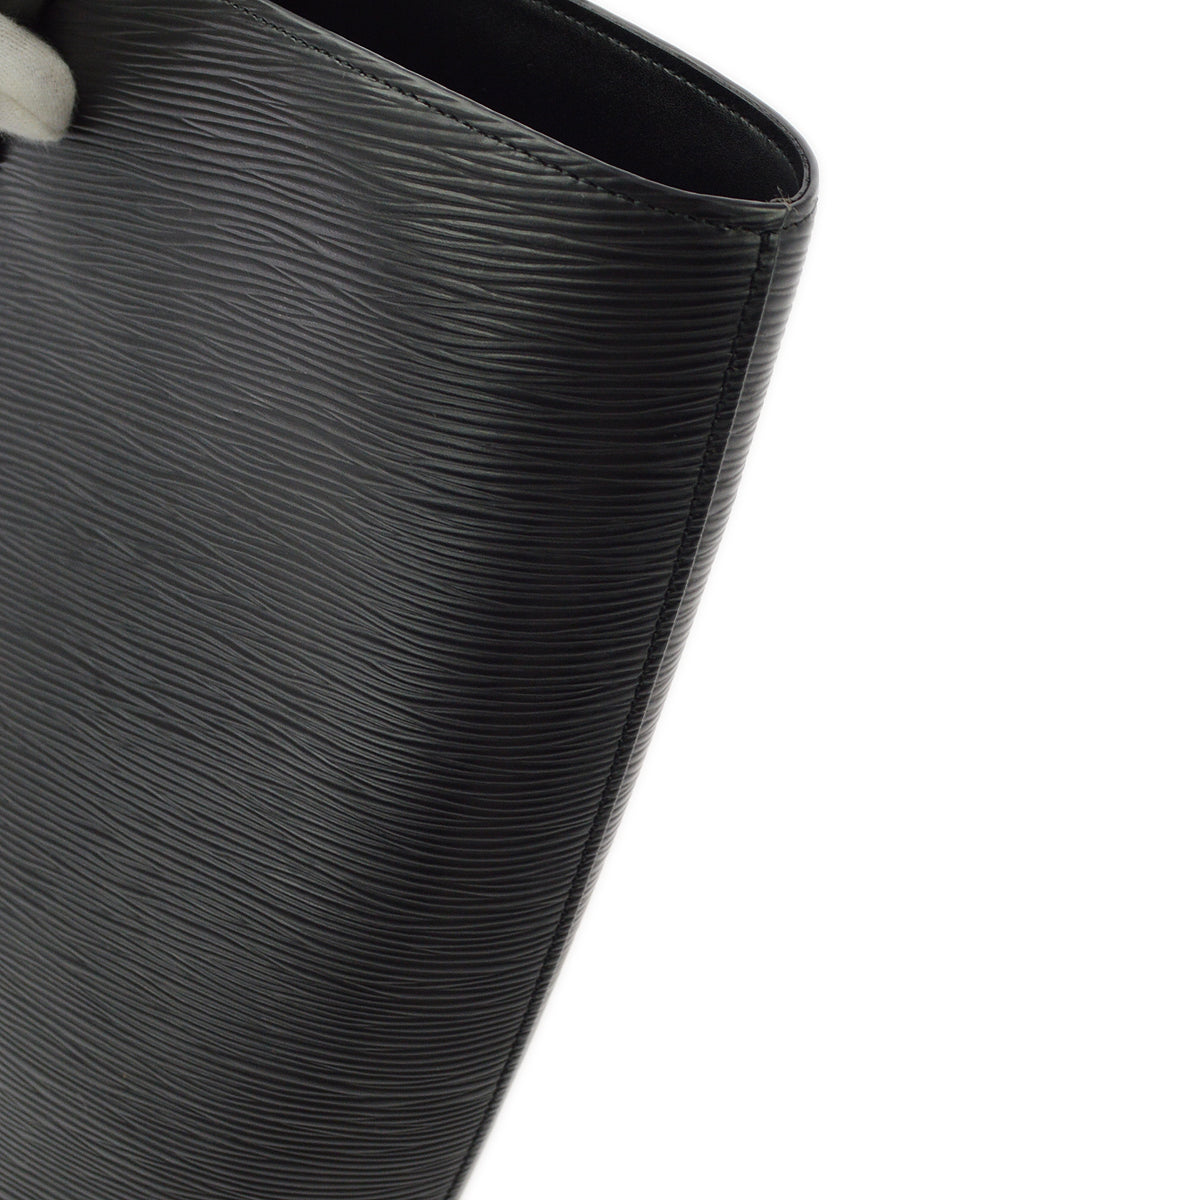 Louis Vuitton 1998 Black Epi Noctambule Tote Handbag M54522